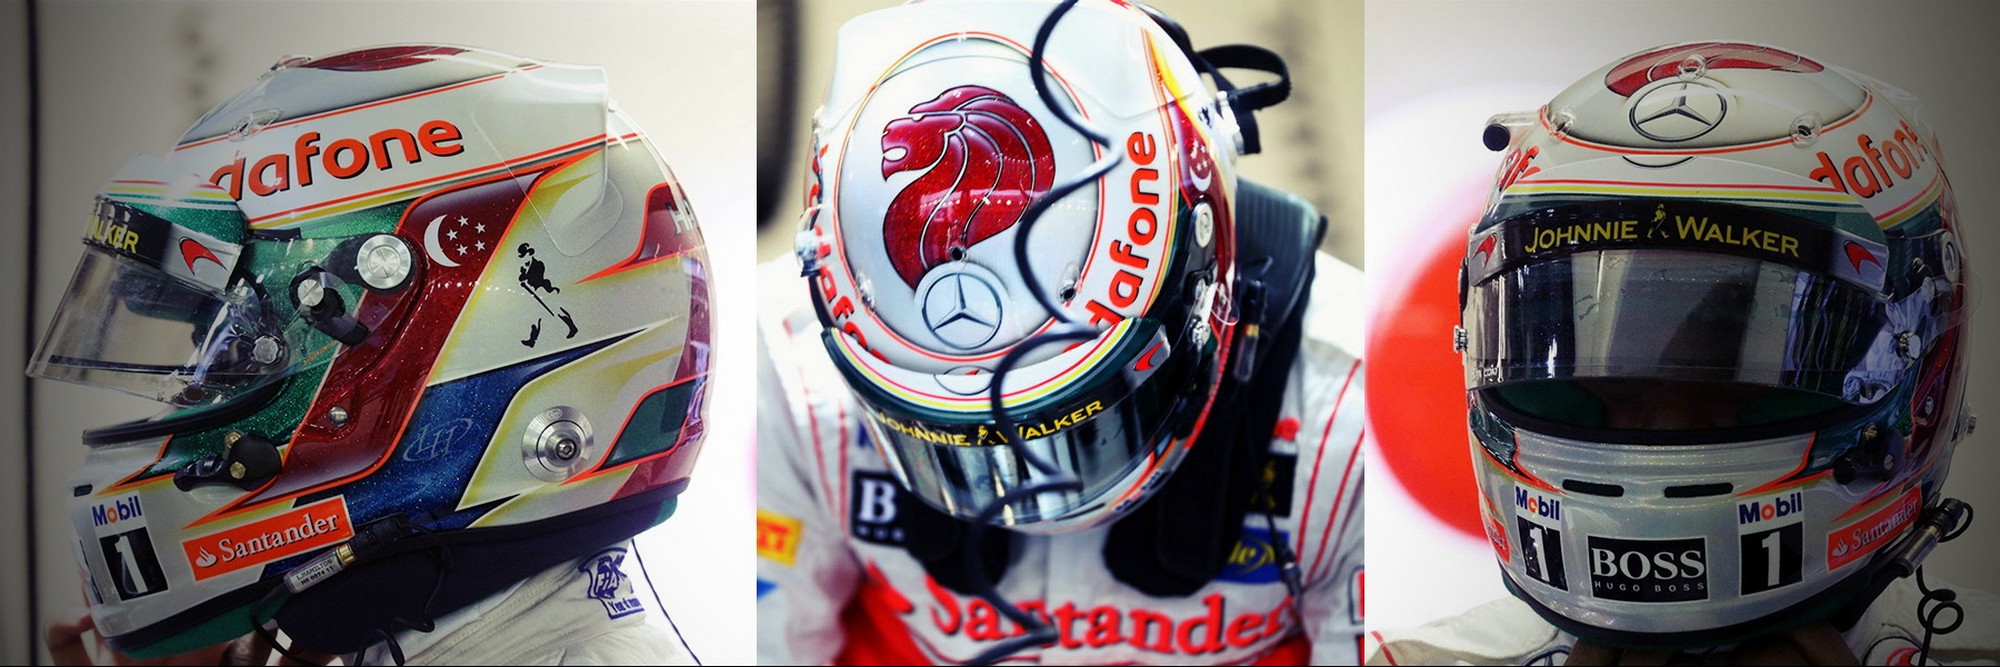 Шлем Льюиса Хэмилтона на Гран-При Сингапура 2012 | 2012 Singapore Grand Prix helmet of Lewis Hamilton